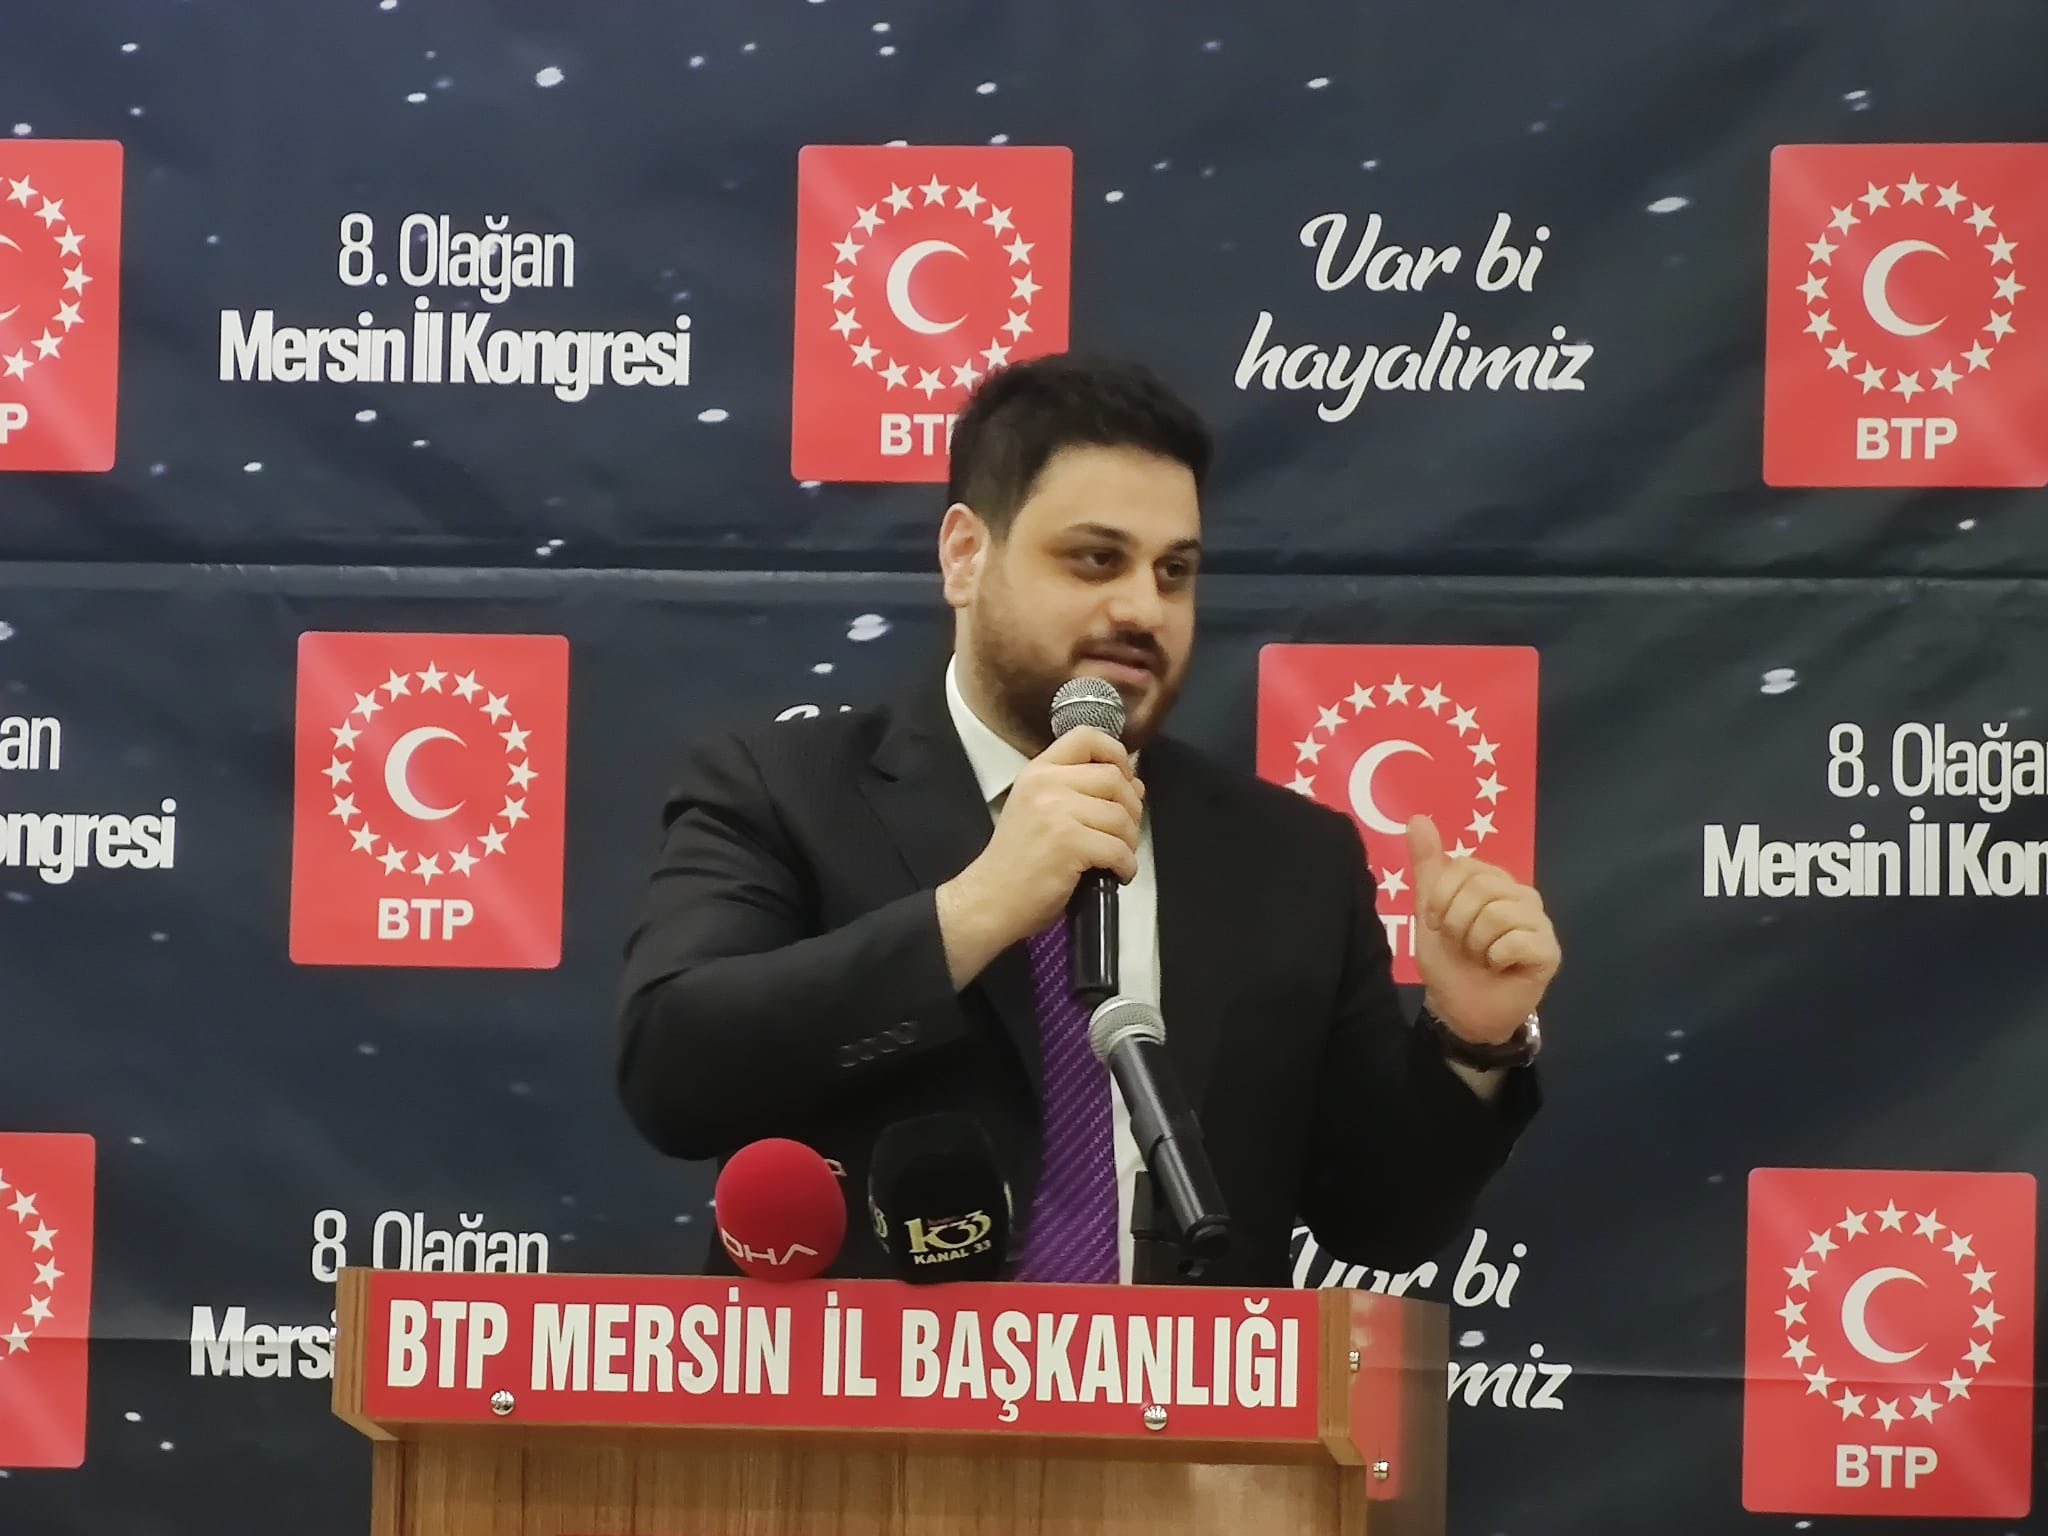 Türkiye'nin en genç lideri Baş: Ali'nin yolundayız